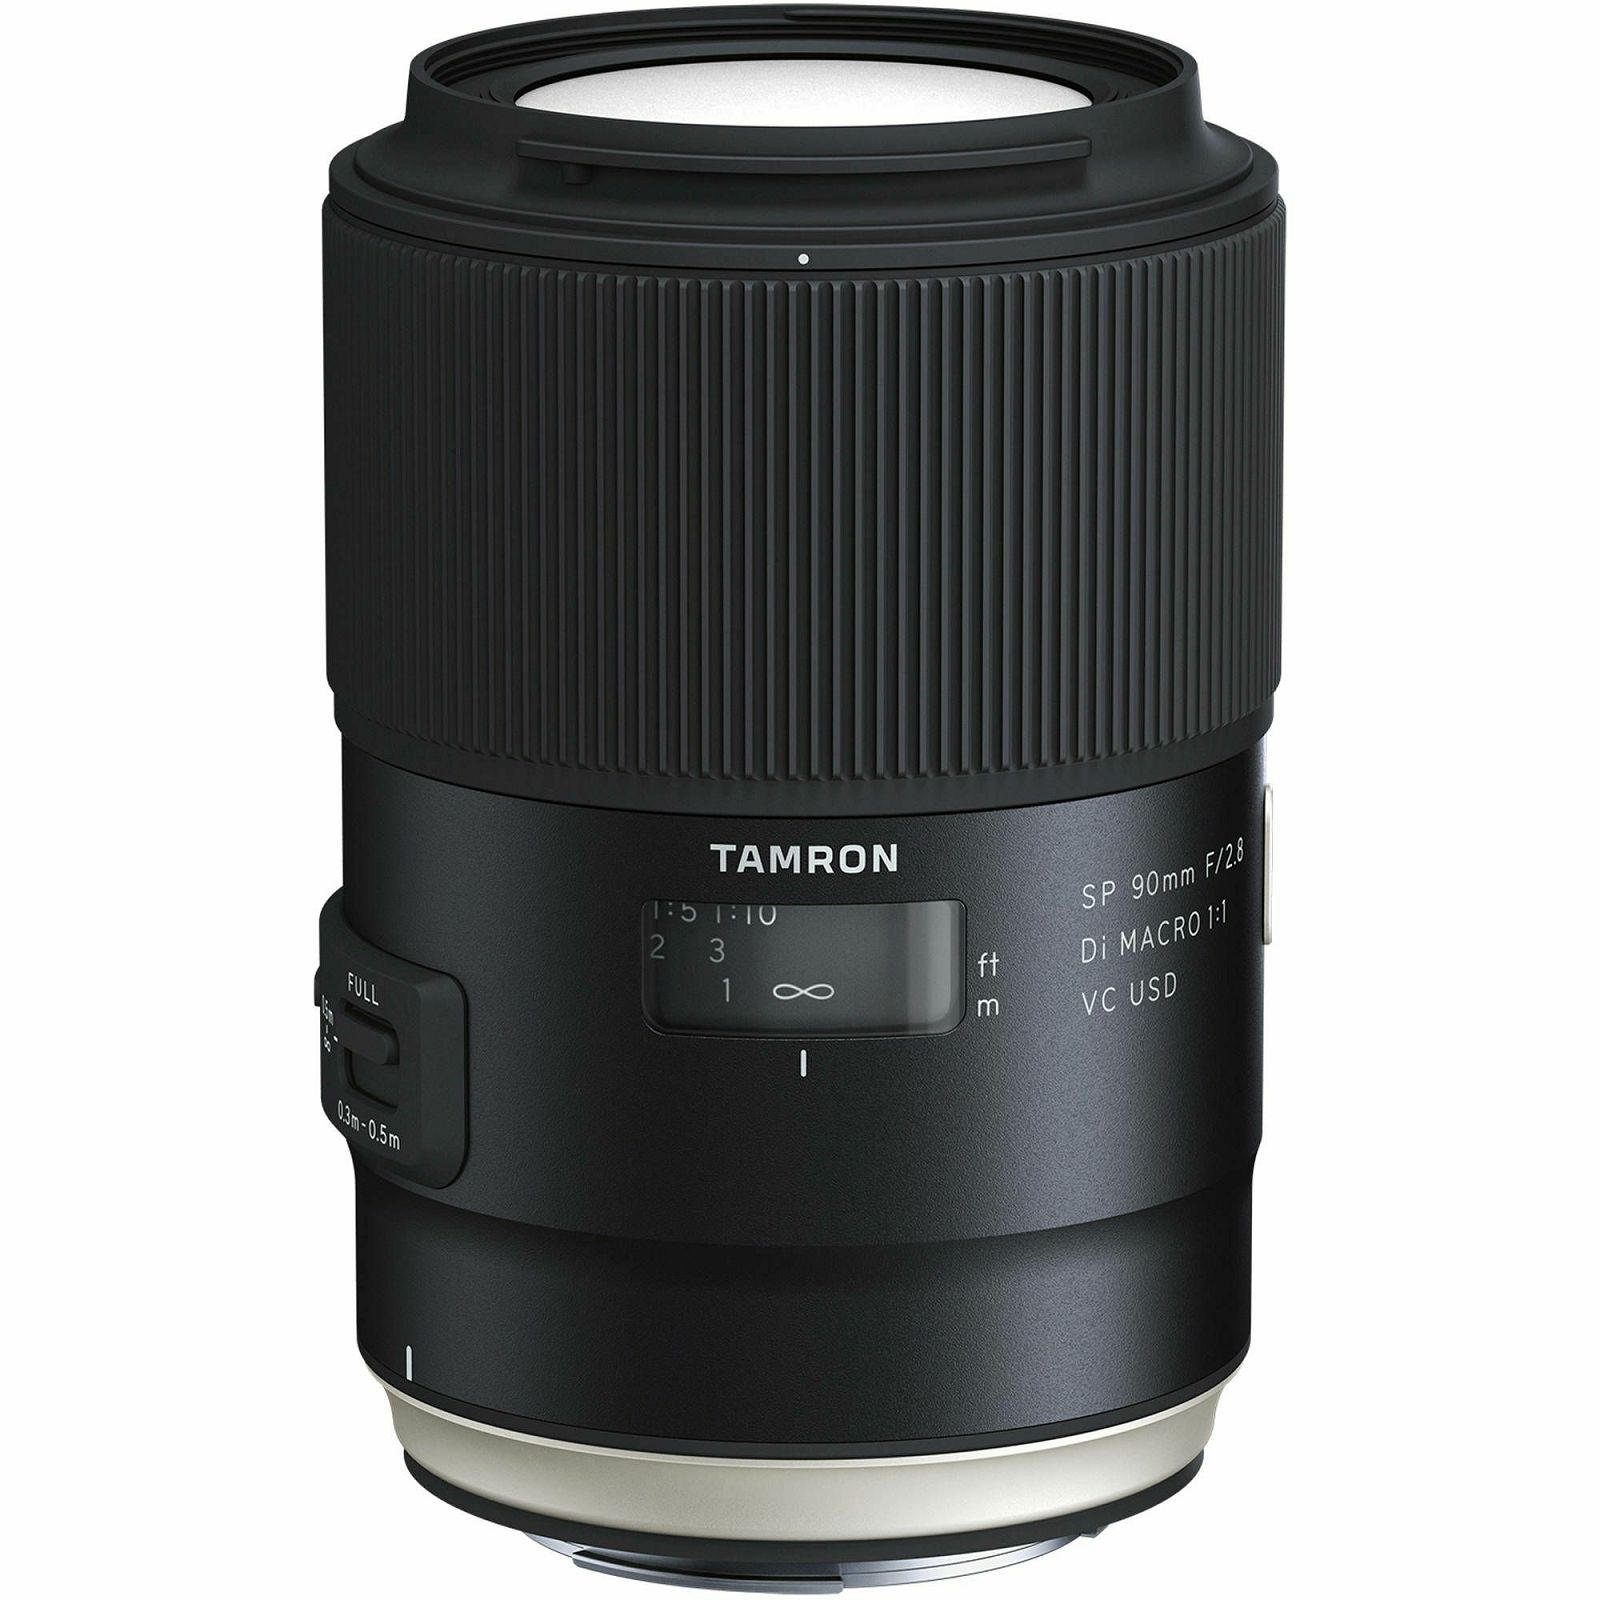 Tamron SP 90mm f/2.8 Di VC USD Macro 1:1 telefoto objektiv za Nikon FX (F017N)